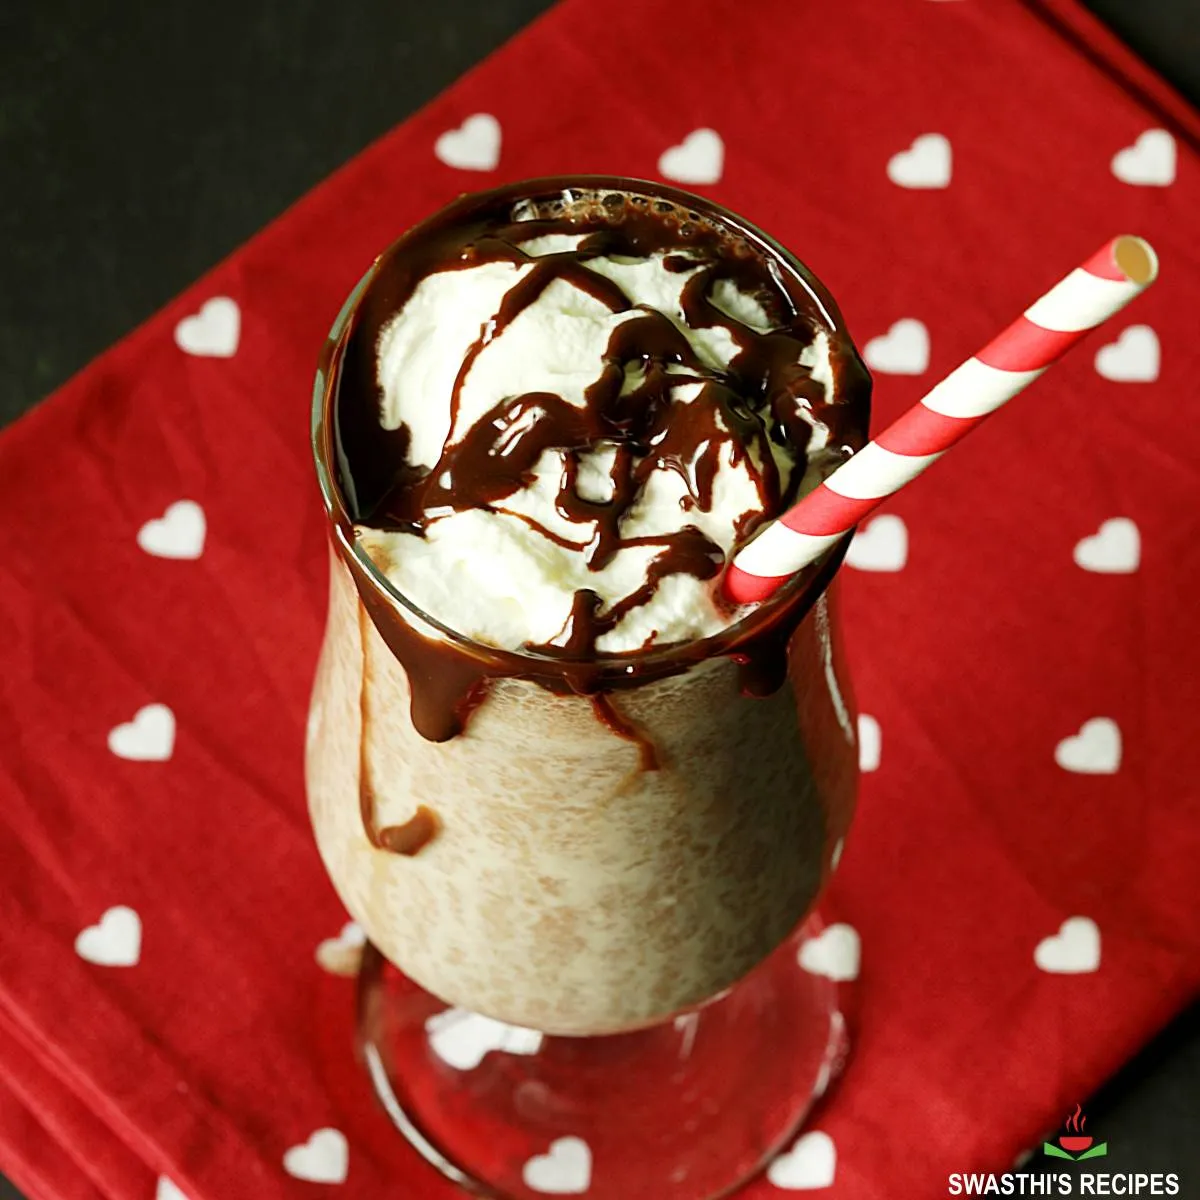 Chocolate shake recipe